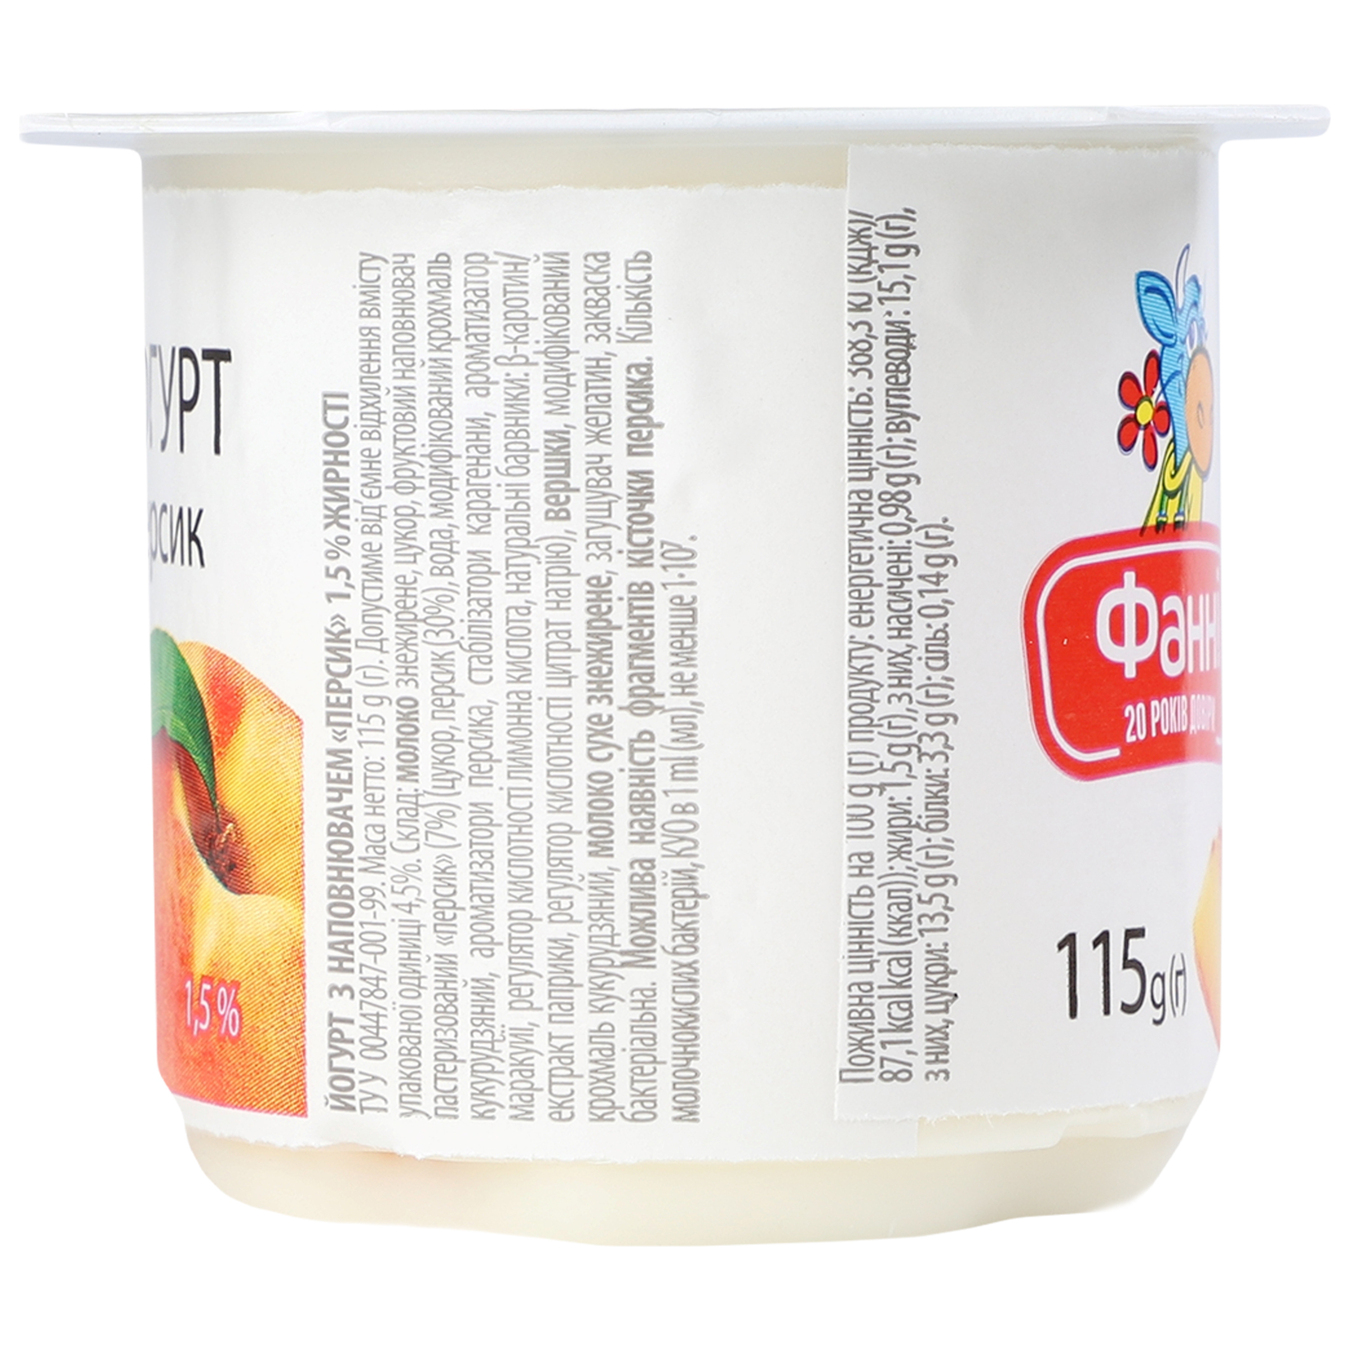 Йогурт Фанни с наполнителем персик стаканчик 1,5% 115г 5